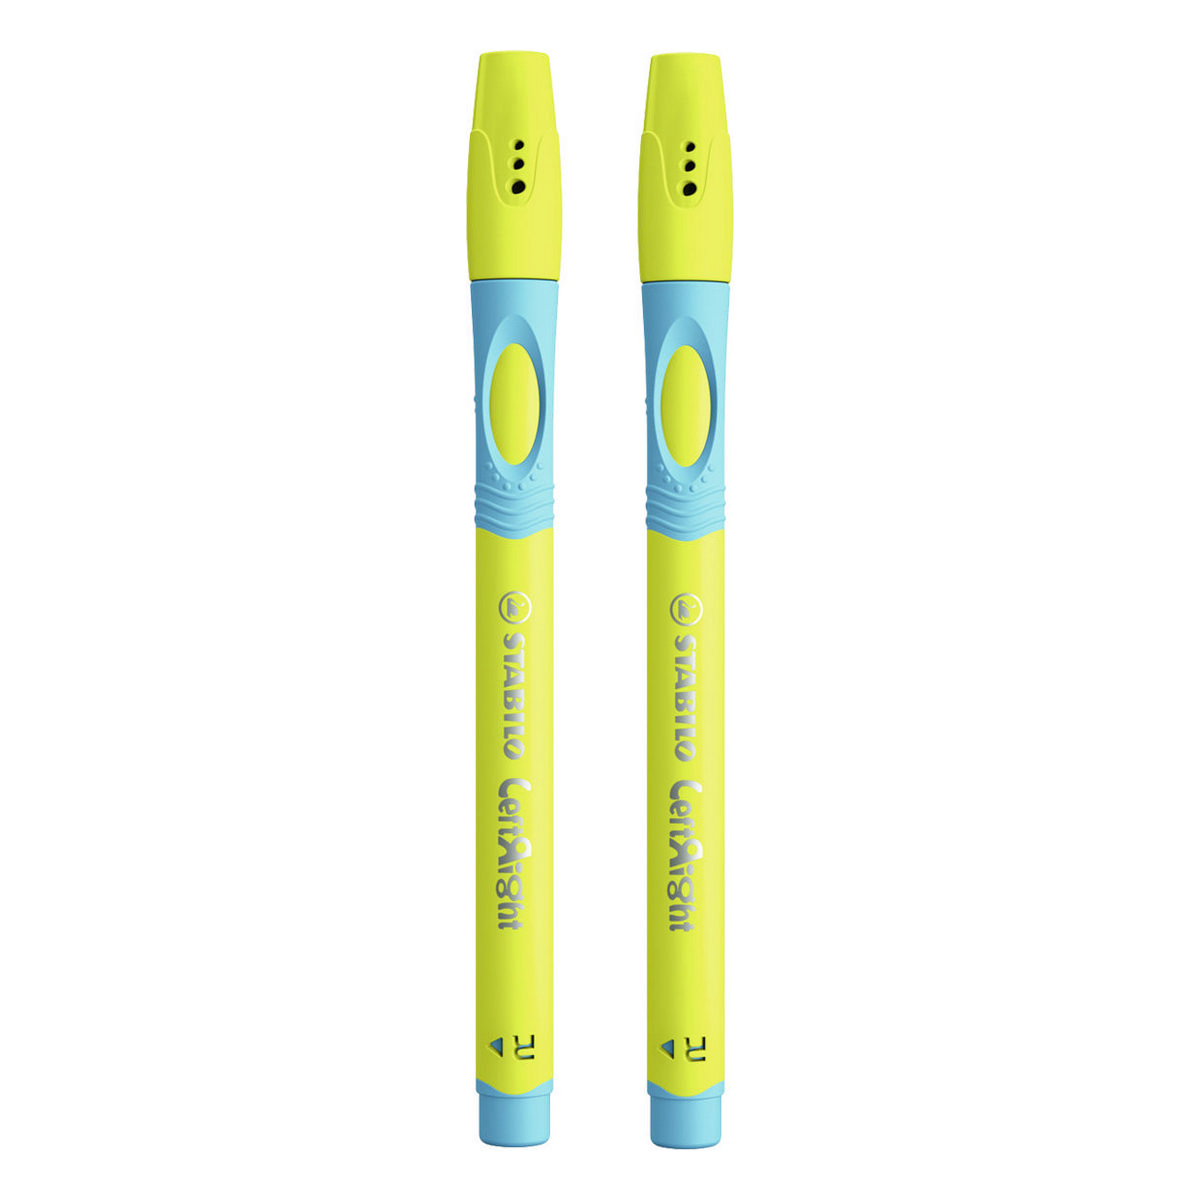 Ручка шариковая масляная STABILO LeftRight для правшей для обучения письму F синяя / корпус жёлто-голубой 2шт в блистере - фото 2